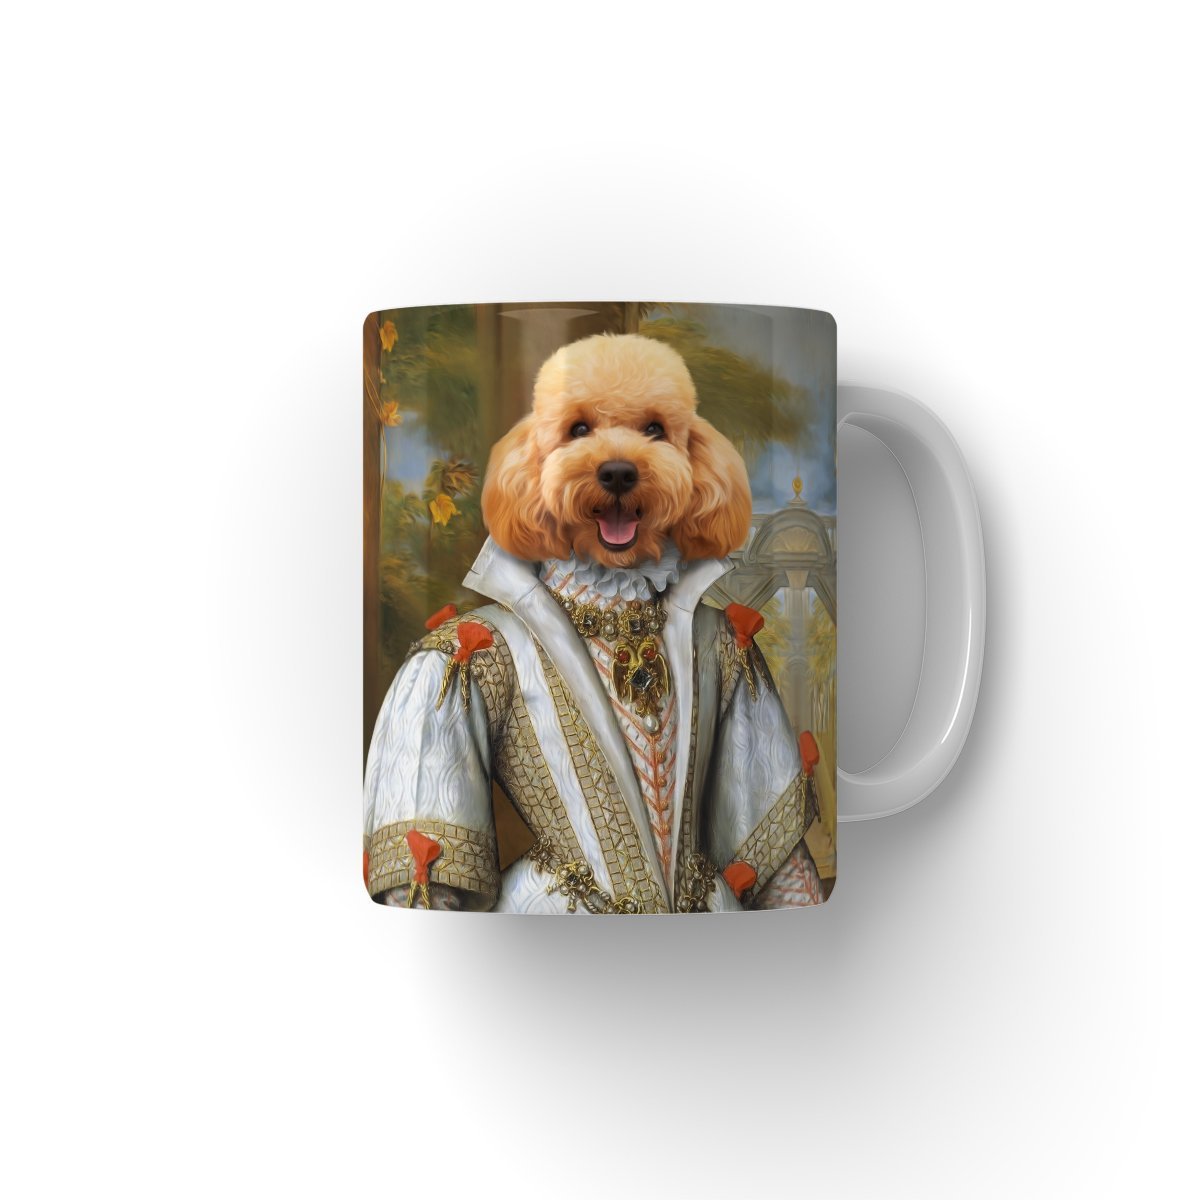 Her Ladyship: Custom Pet Mug - Paw & Glory - #pet portraits# - #dog portraits# - #pet portraits uk#paw & glory, custom pet portrait Mug,pet on a mug, make your own coffee mugs, dog face on mug, personalized dog mugs, coffee mug with dogs face